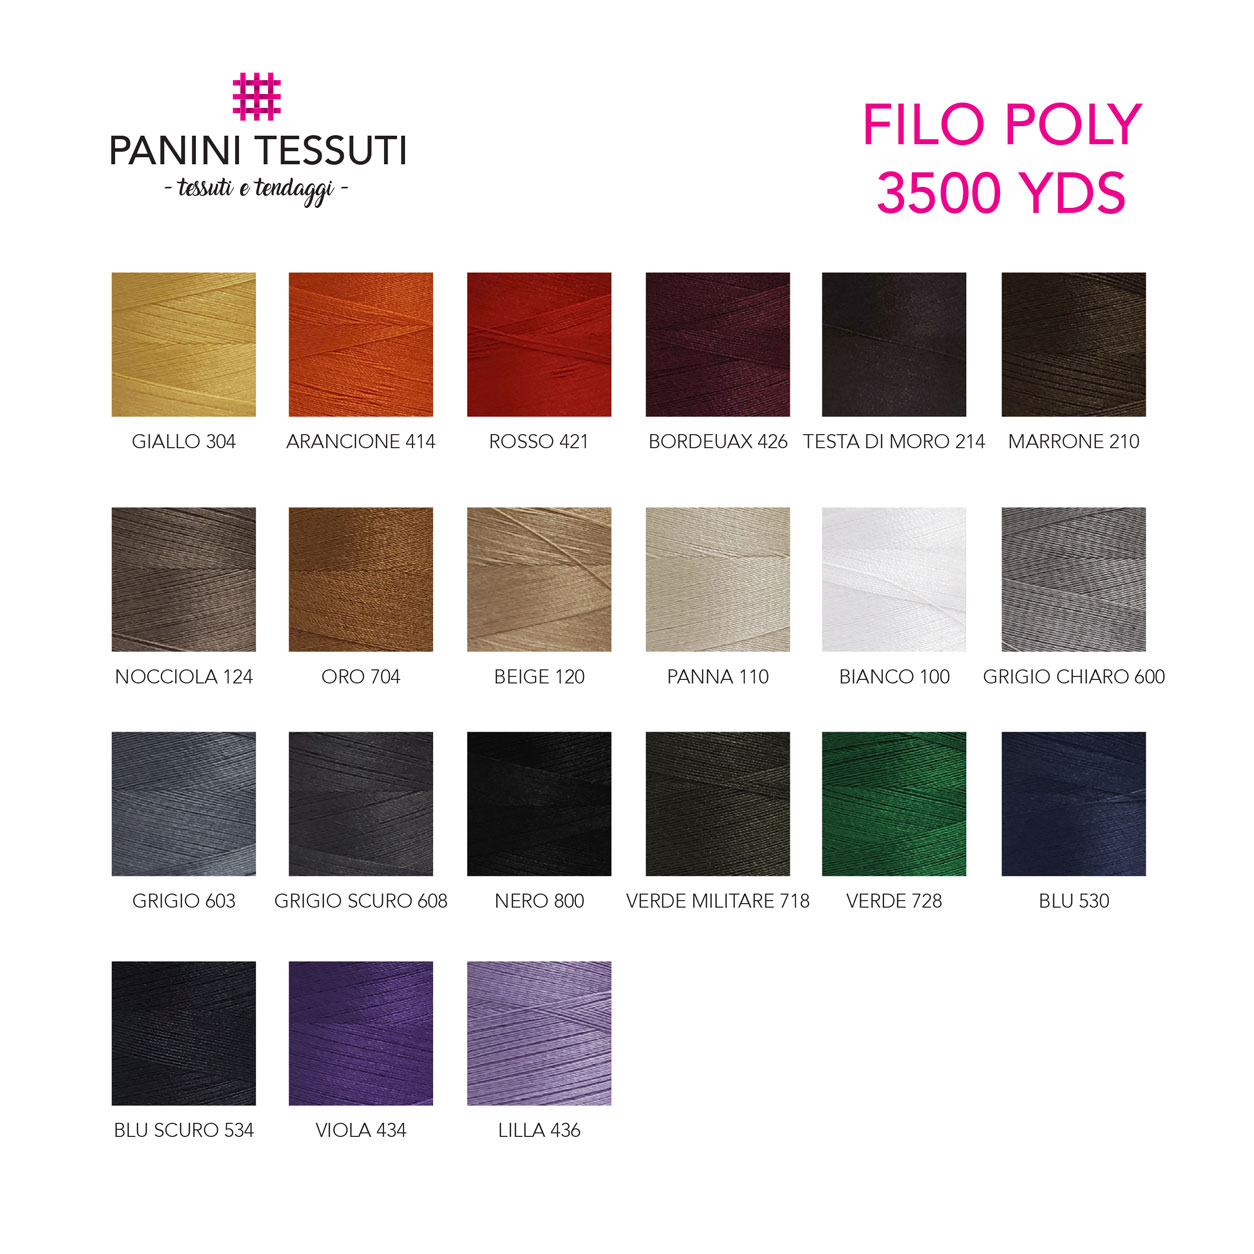 filo-poly-3500-yds